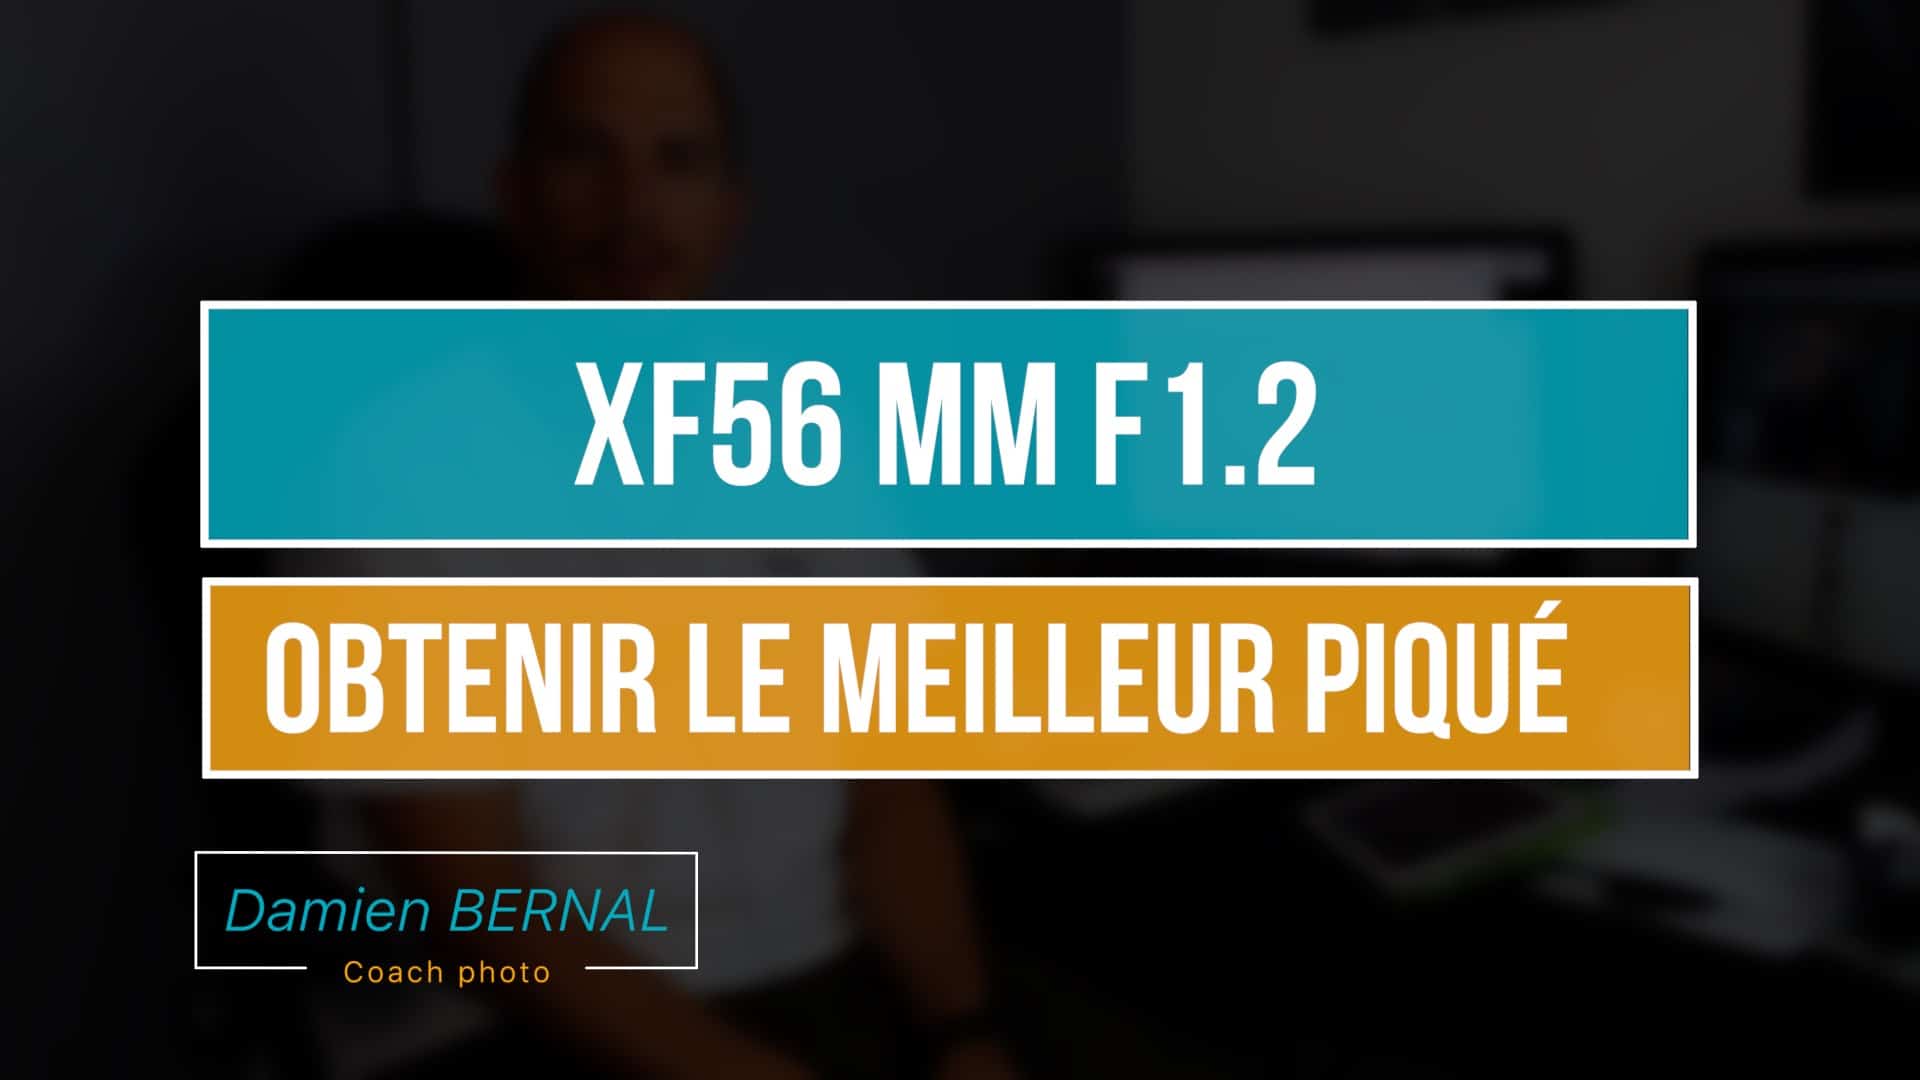 XF 56 mm F1.2 : Quelle est la meilleure ouverture